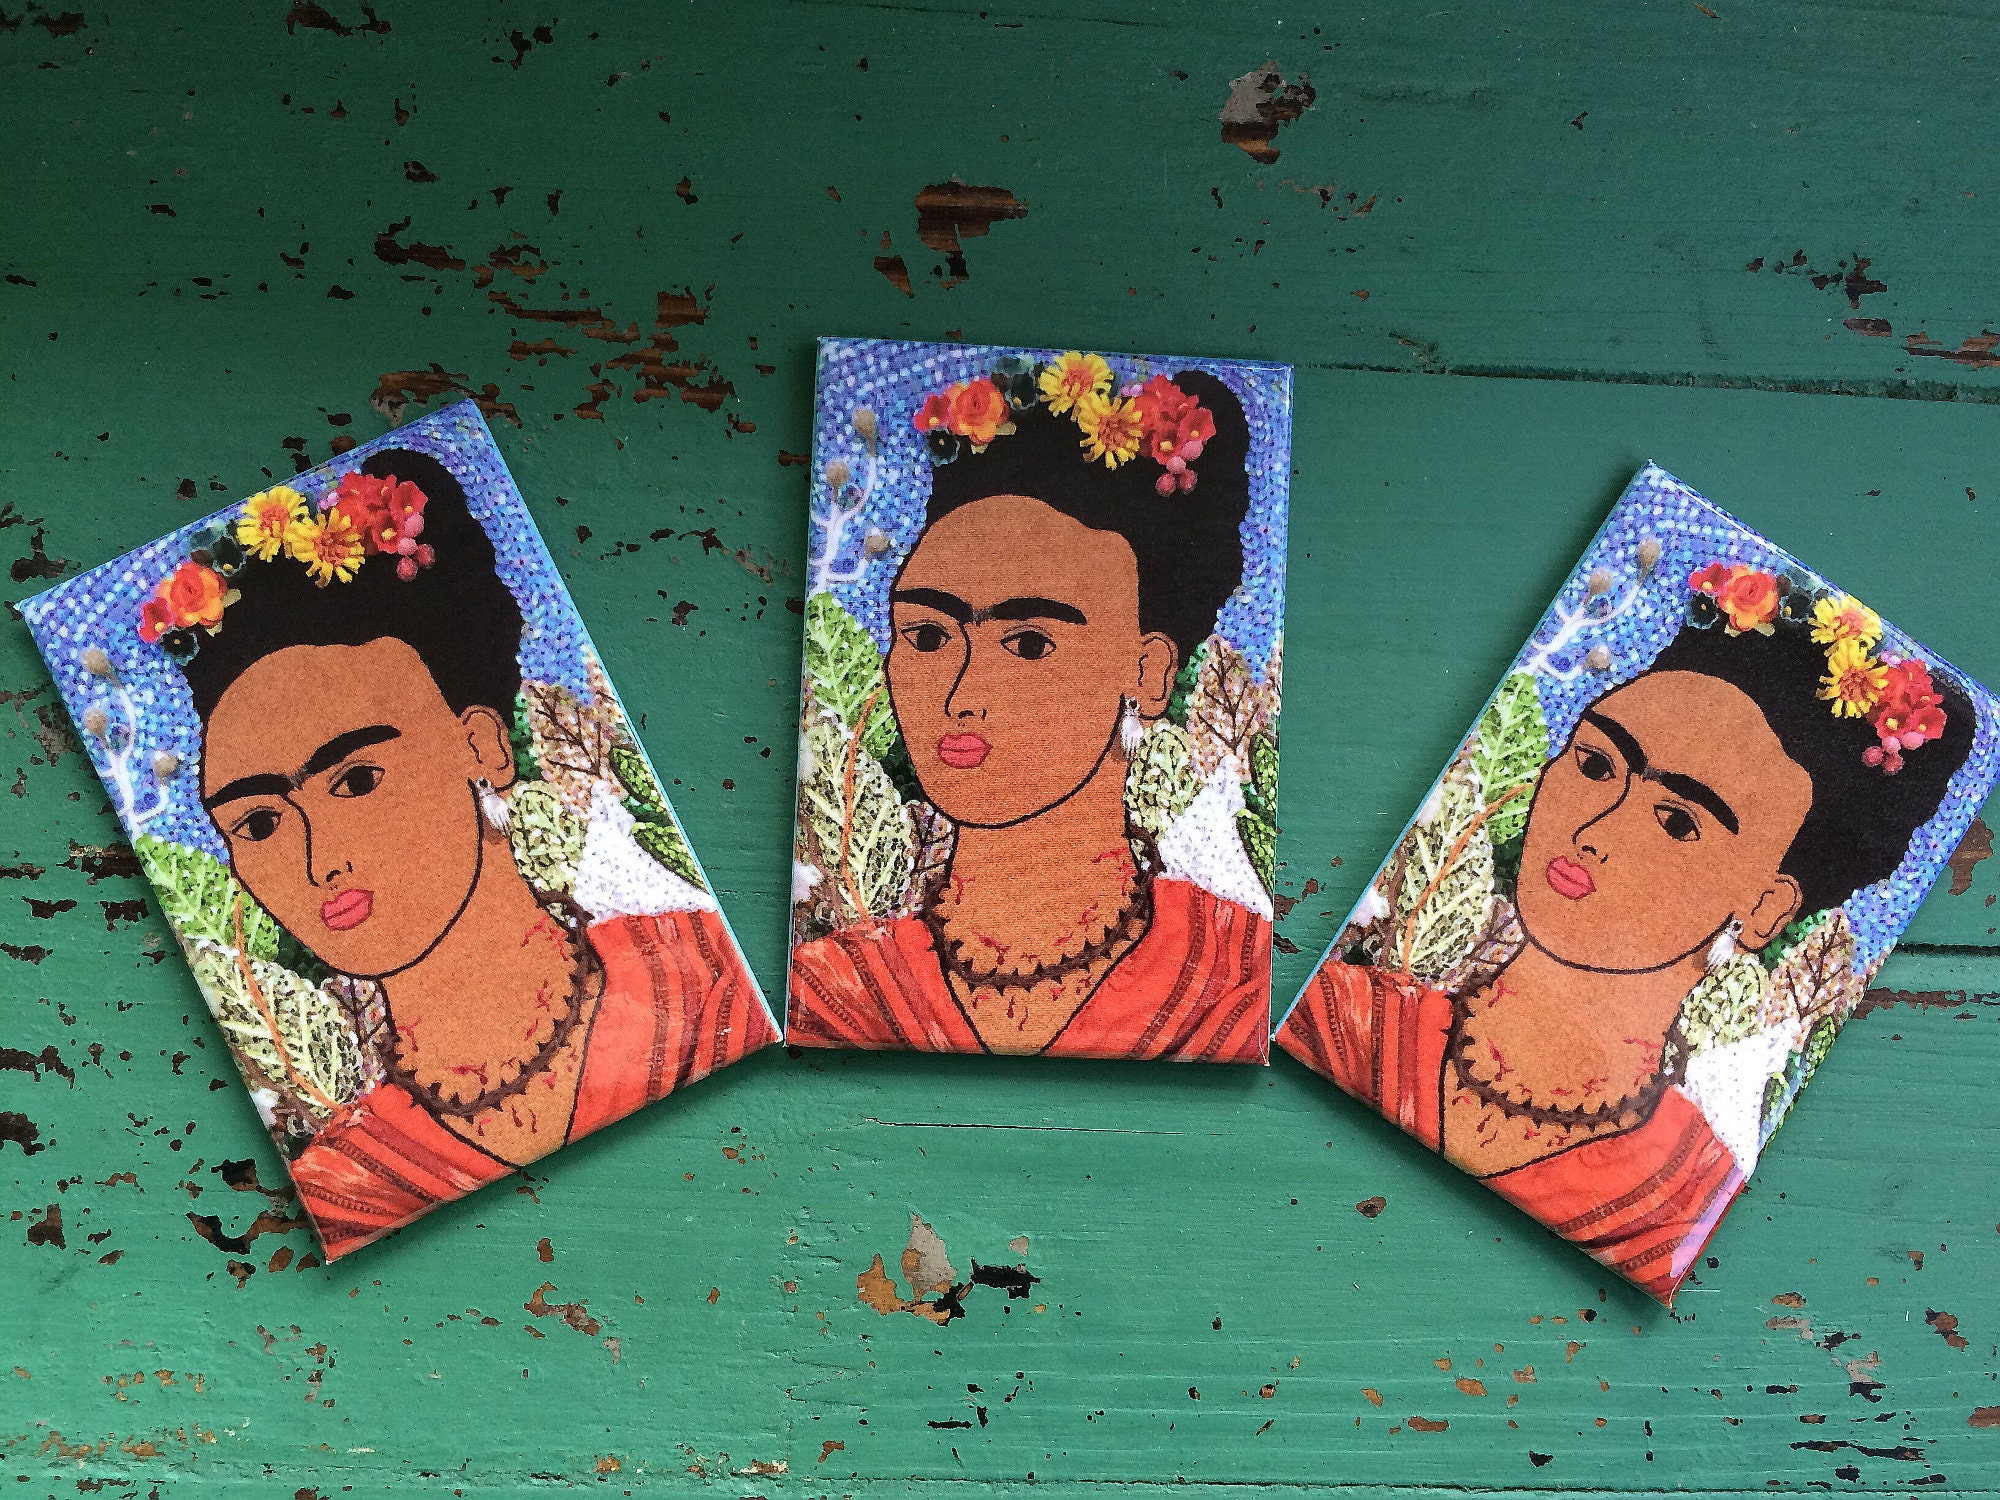 Kühlschrank magnet, Frida Kahlo, fruit